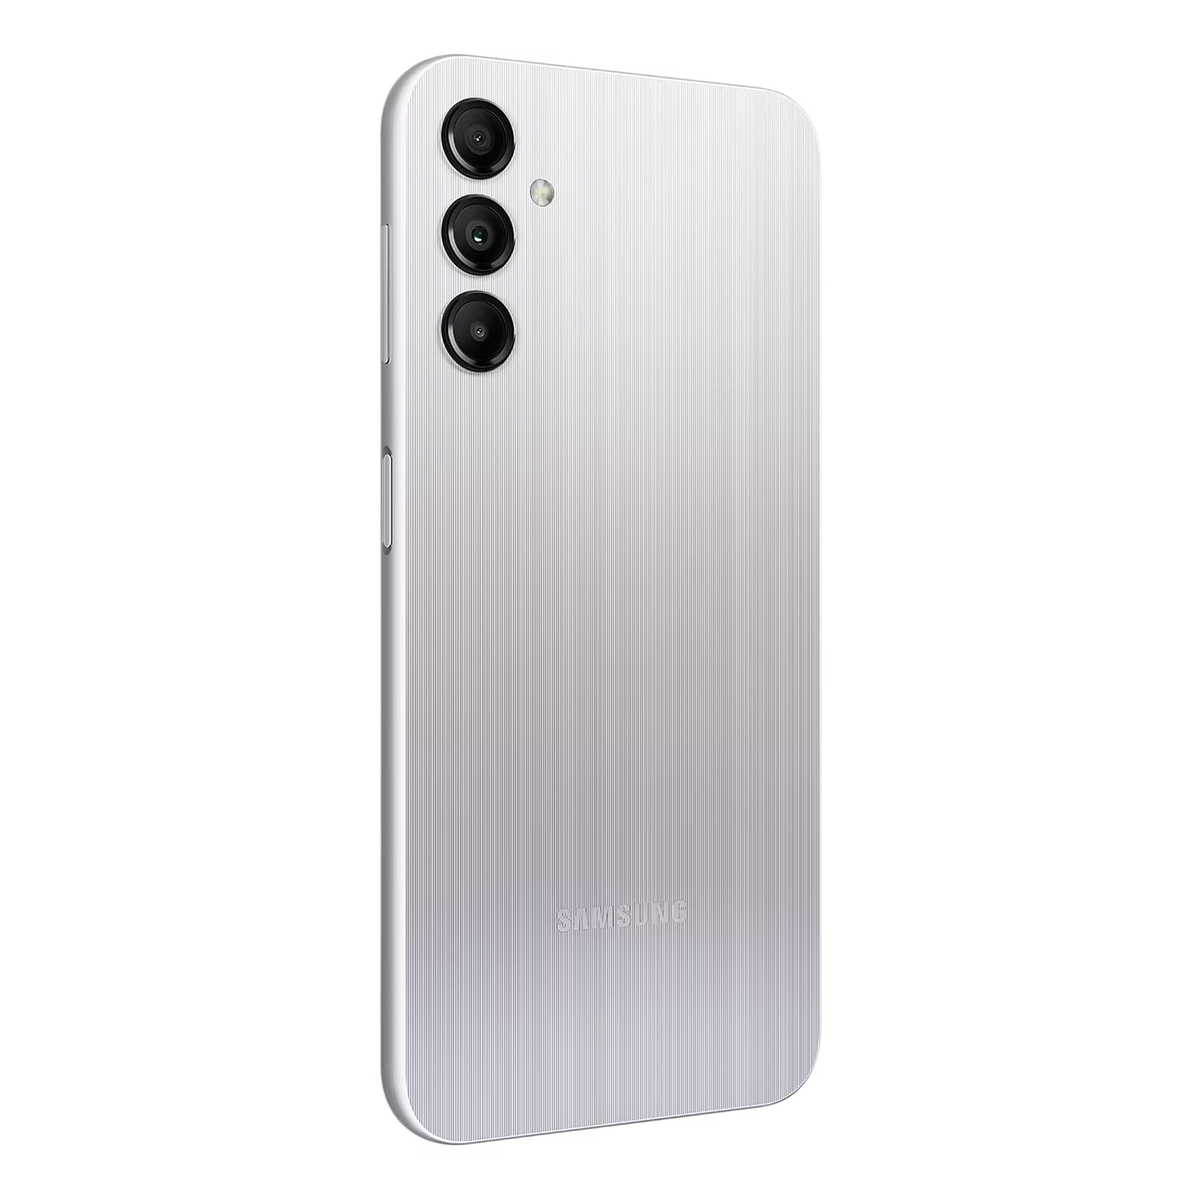 Samsung Galaxy A14 Dual SIM 4G Smartphone, 4 GB RAM, 64 GB Storage, Silver